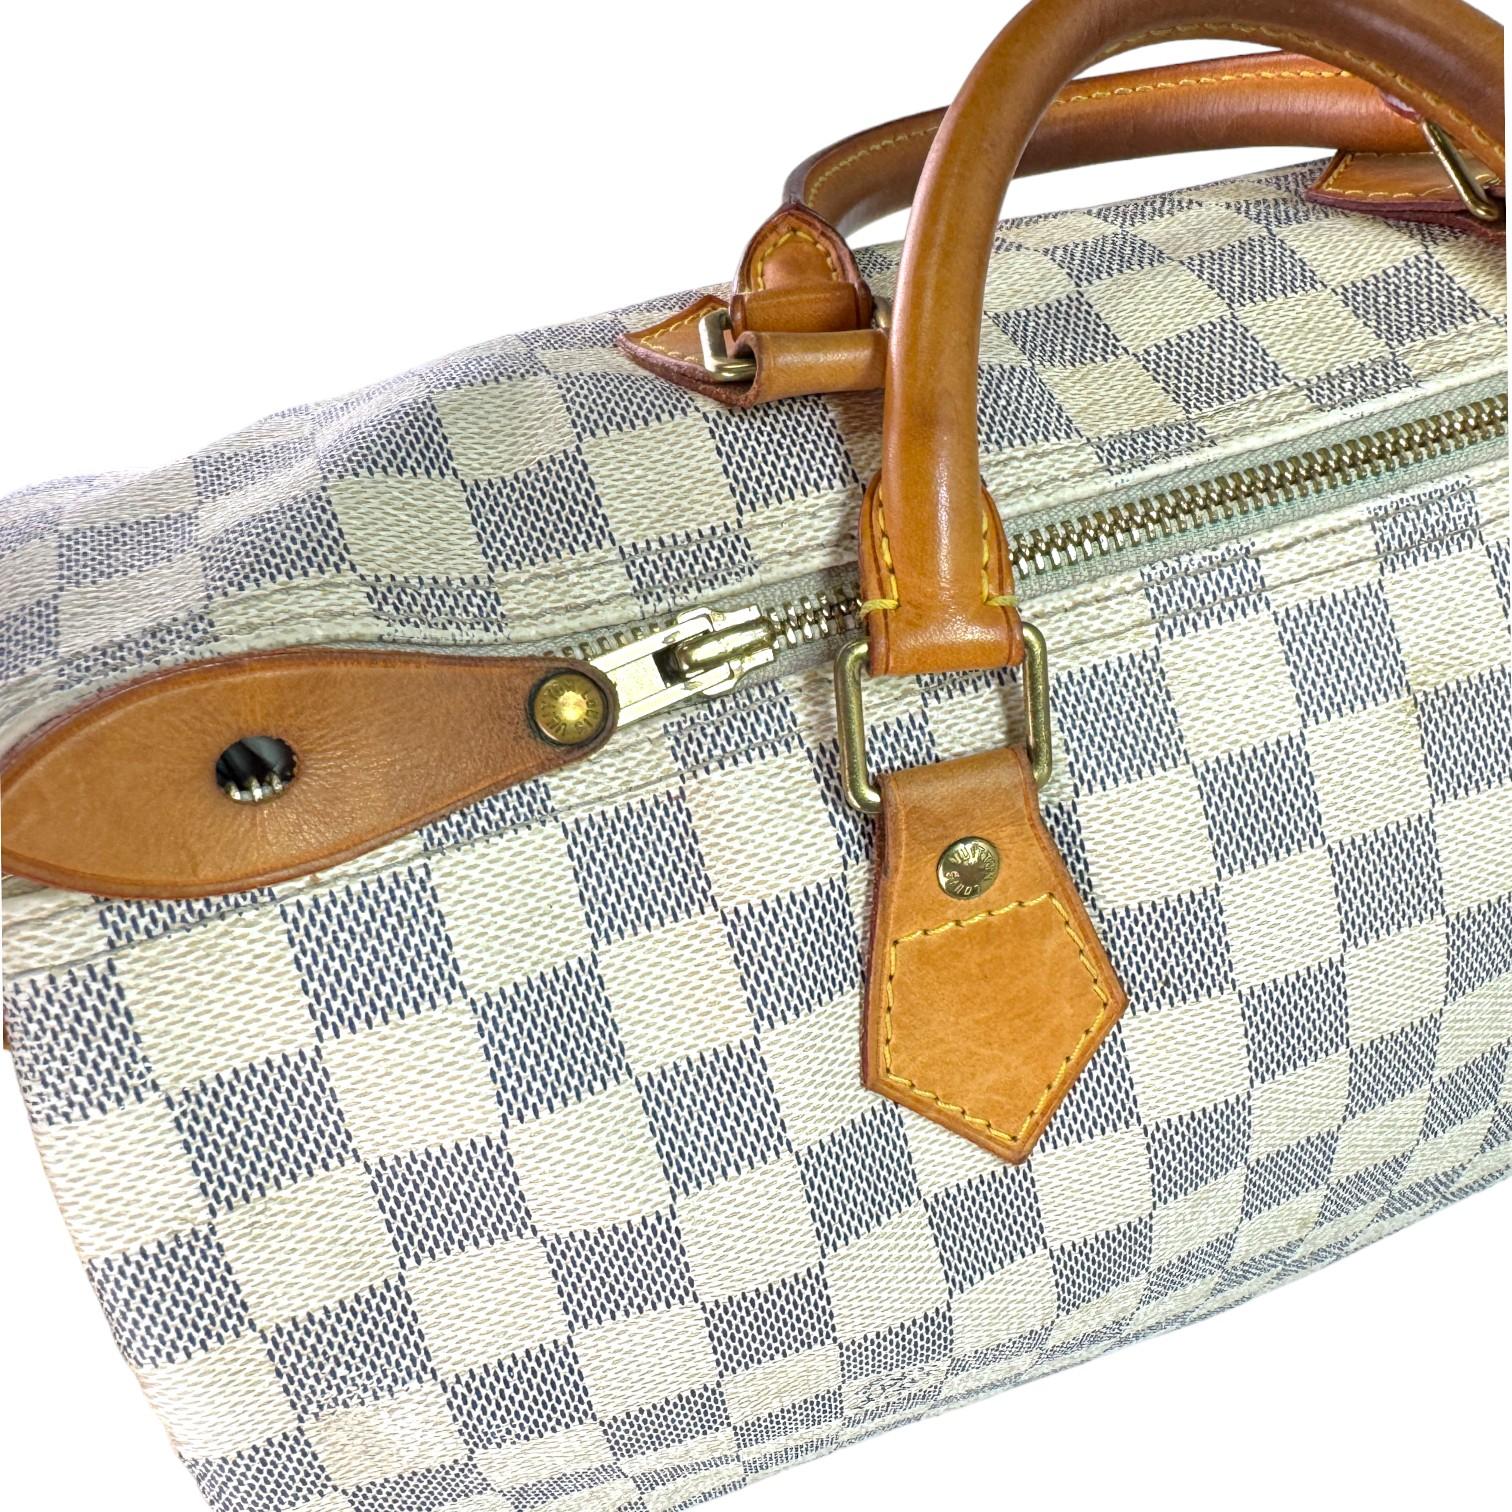 Authentic estate Louis Vuitton Speedy 35 Damier Azur bag